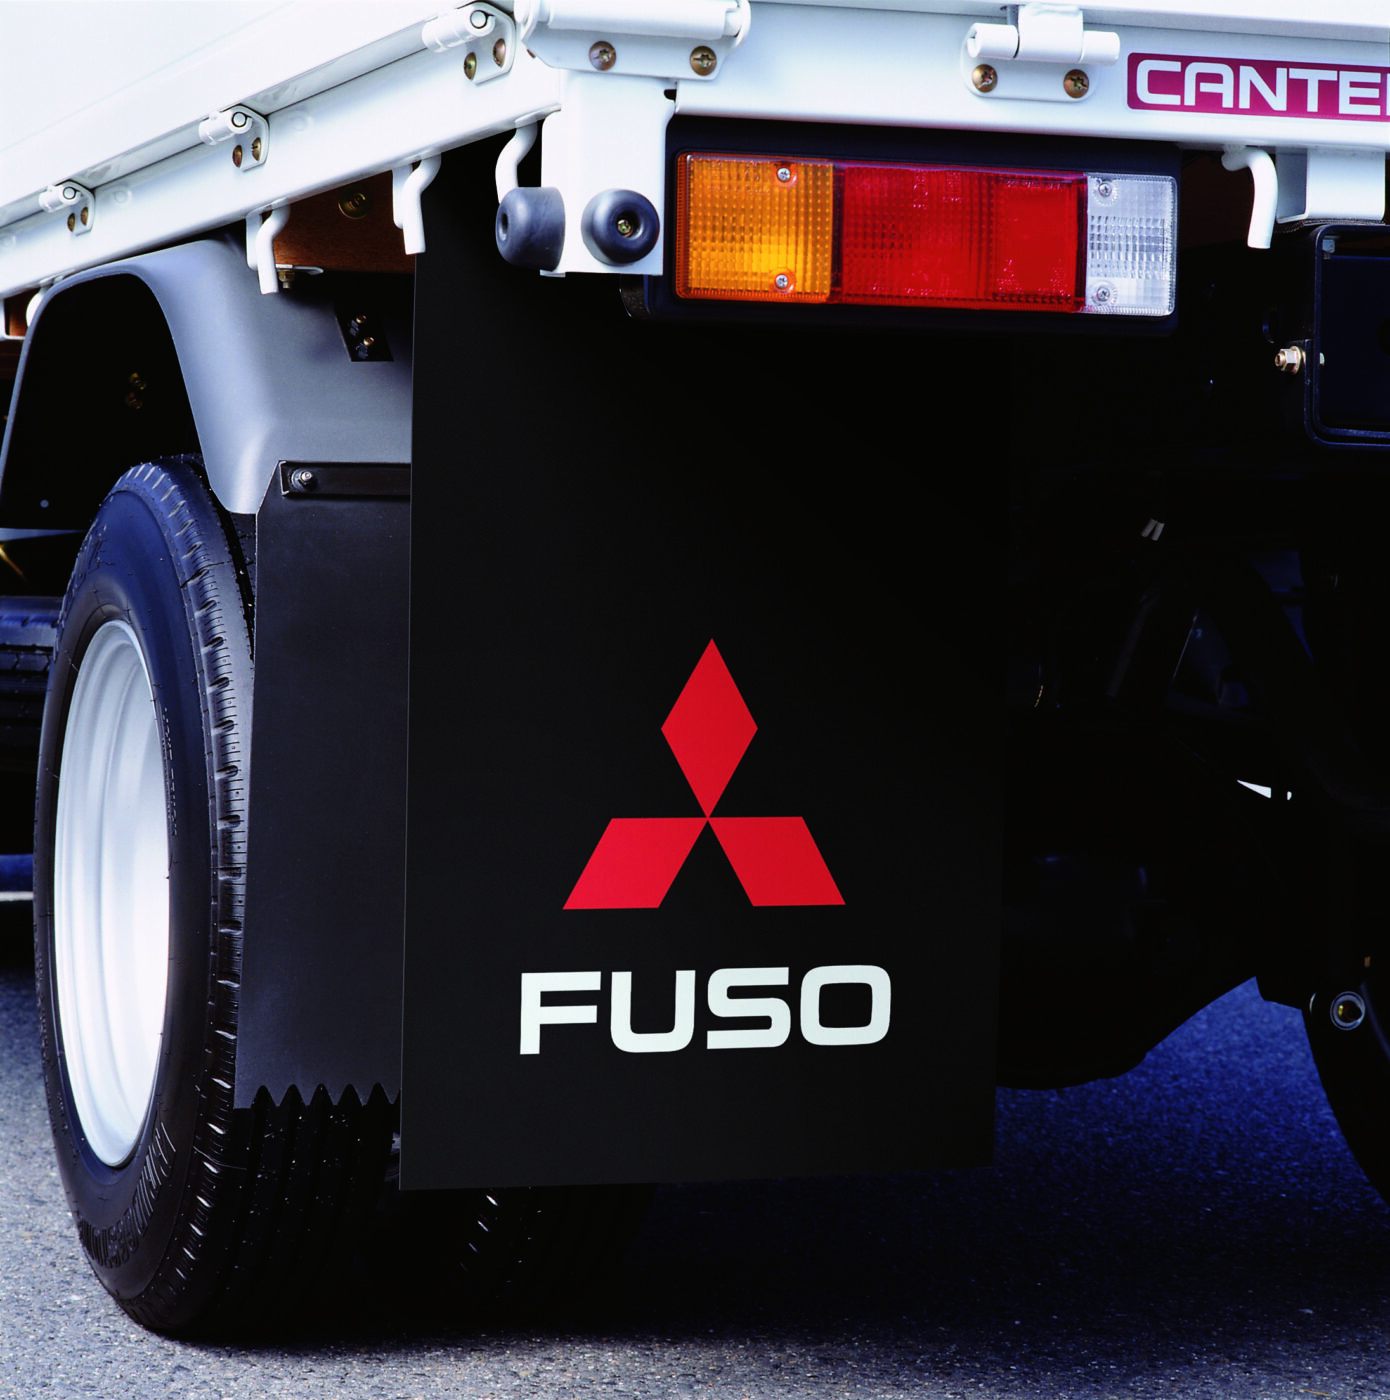 Os deflectores de sujidade FUSO protegem o veículo, os passageiros, outros veículos e as pessoas contra lama e sujidade levantada pelos pneus.